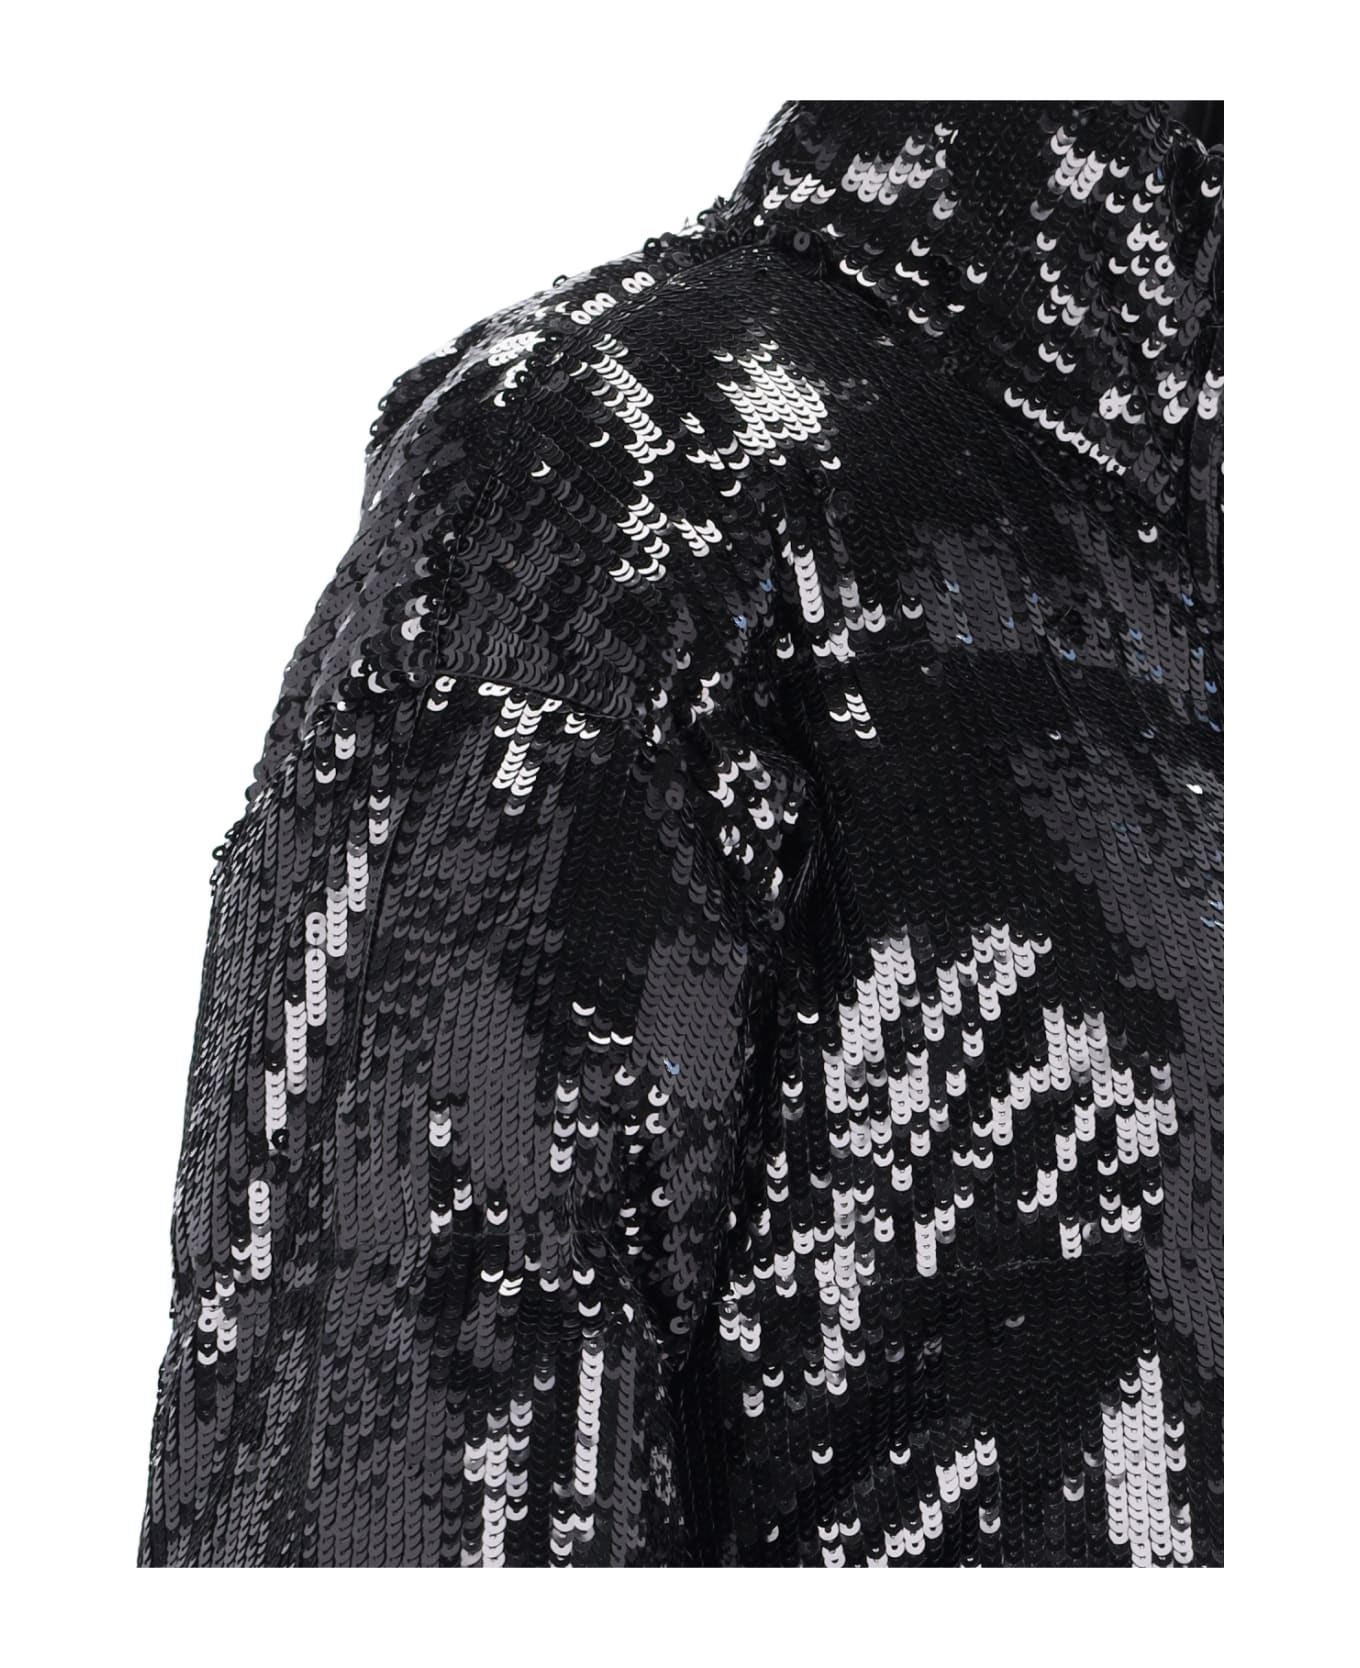 Michael Kors Sequin Embellished Puffer Jacket - Black